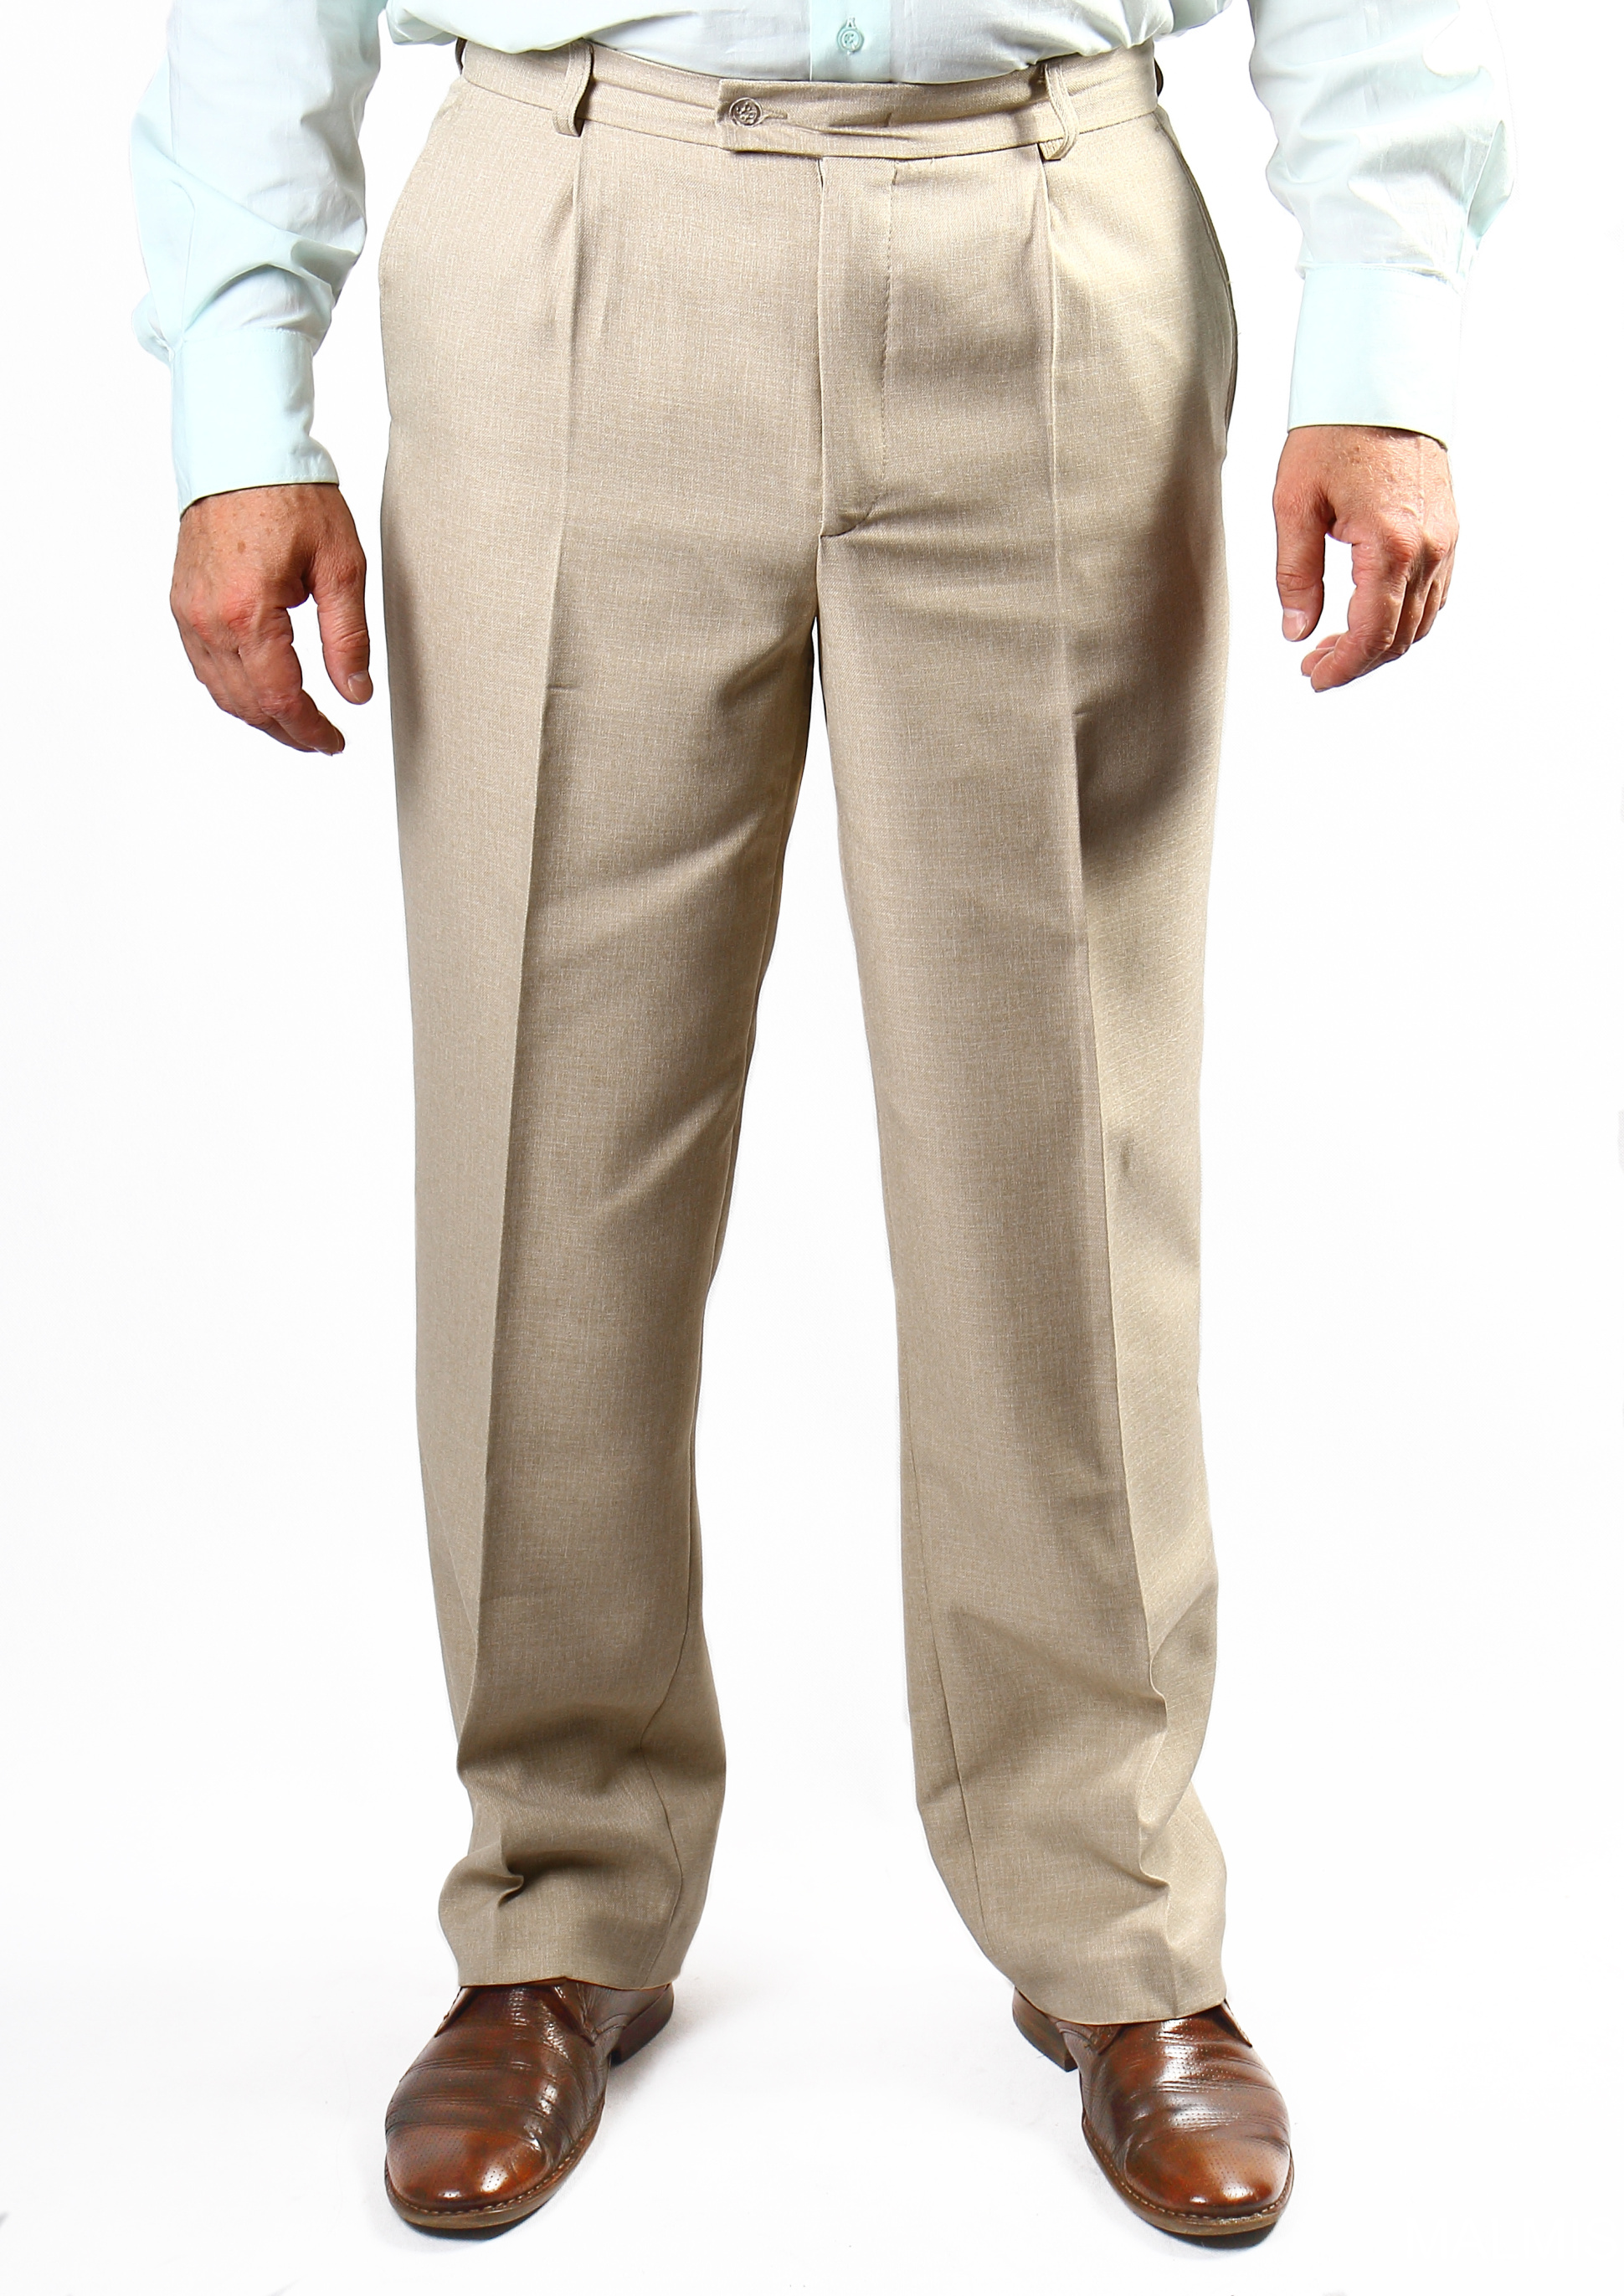 Размер классических брюк мужских. Benetton мужские брюки Cotton Linen. Брюки мужские классические. Летние классические брюки для мужчин. Мужчина в классических брюках.